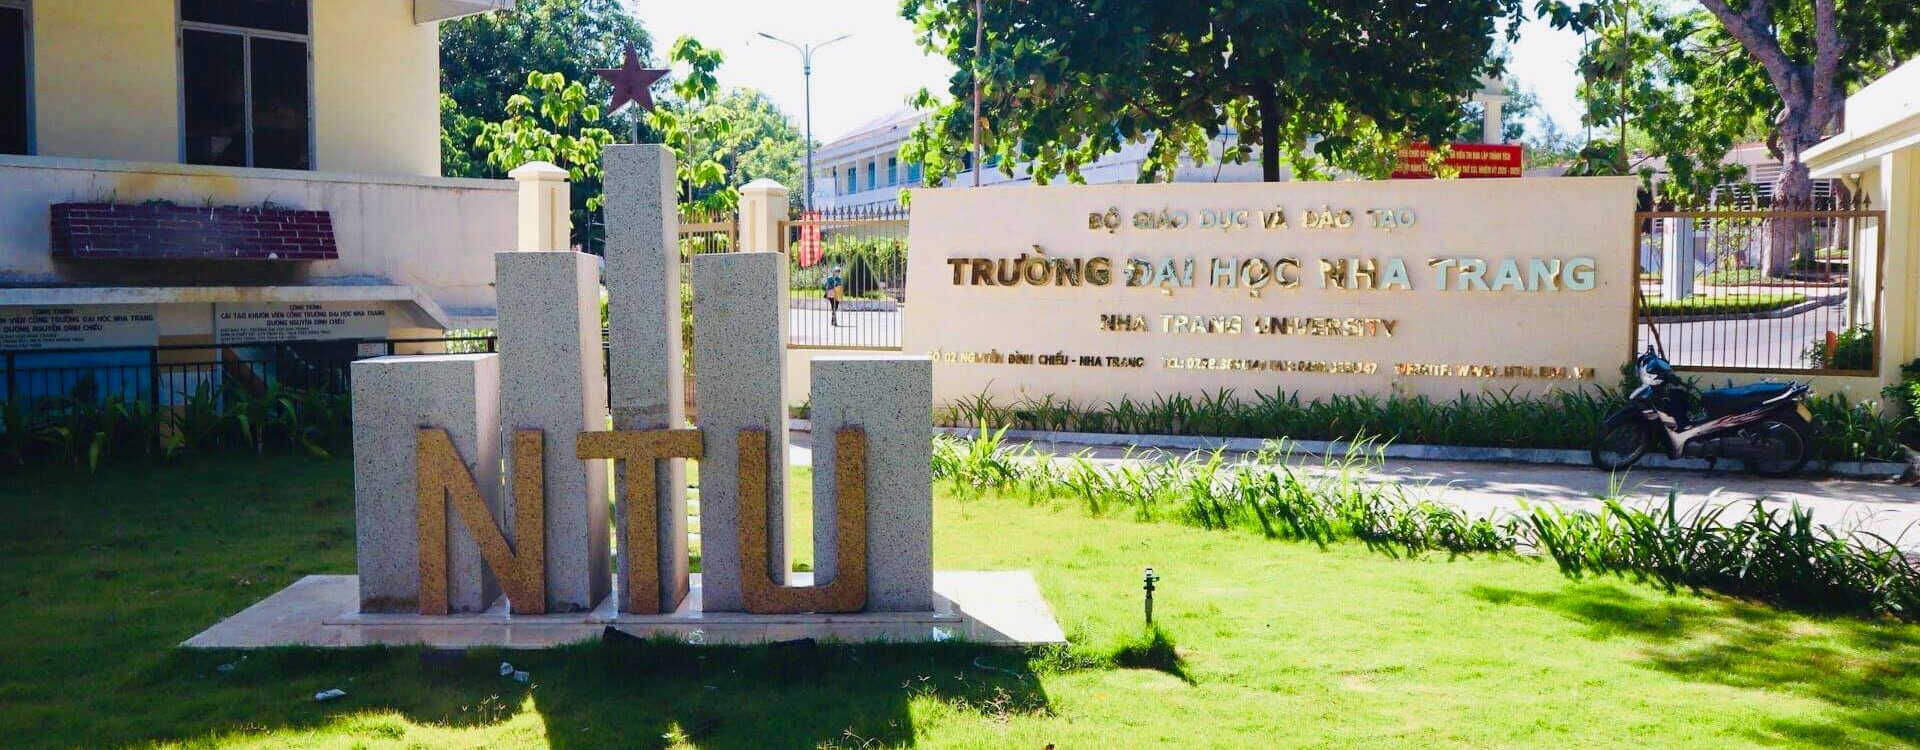 62 Năm Ngày truyền thống Trường Đại học Nha Trang